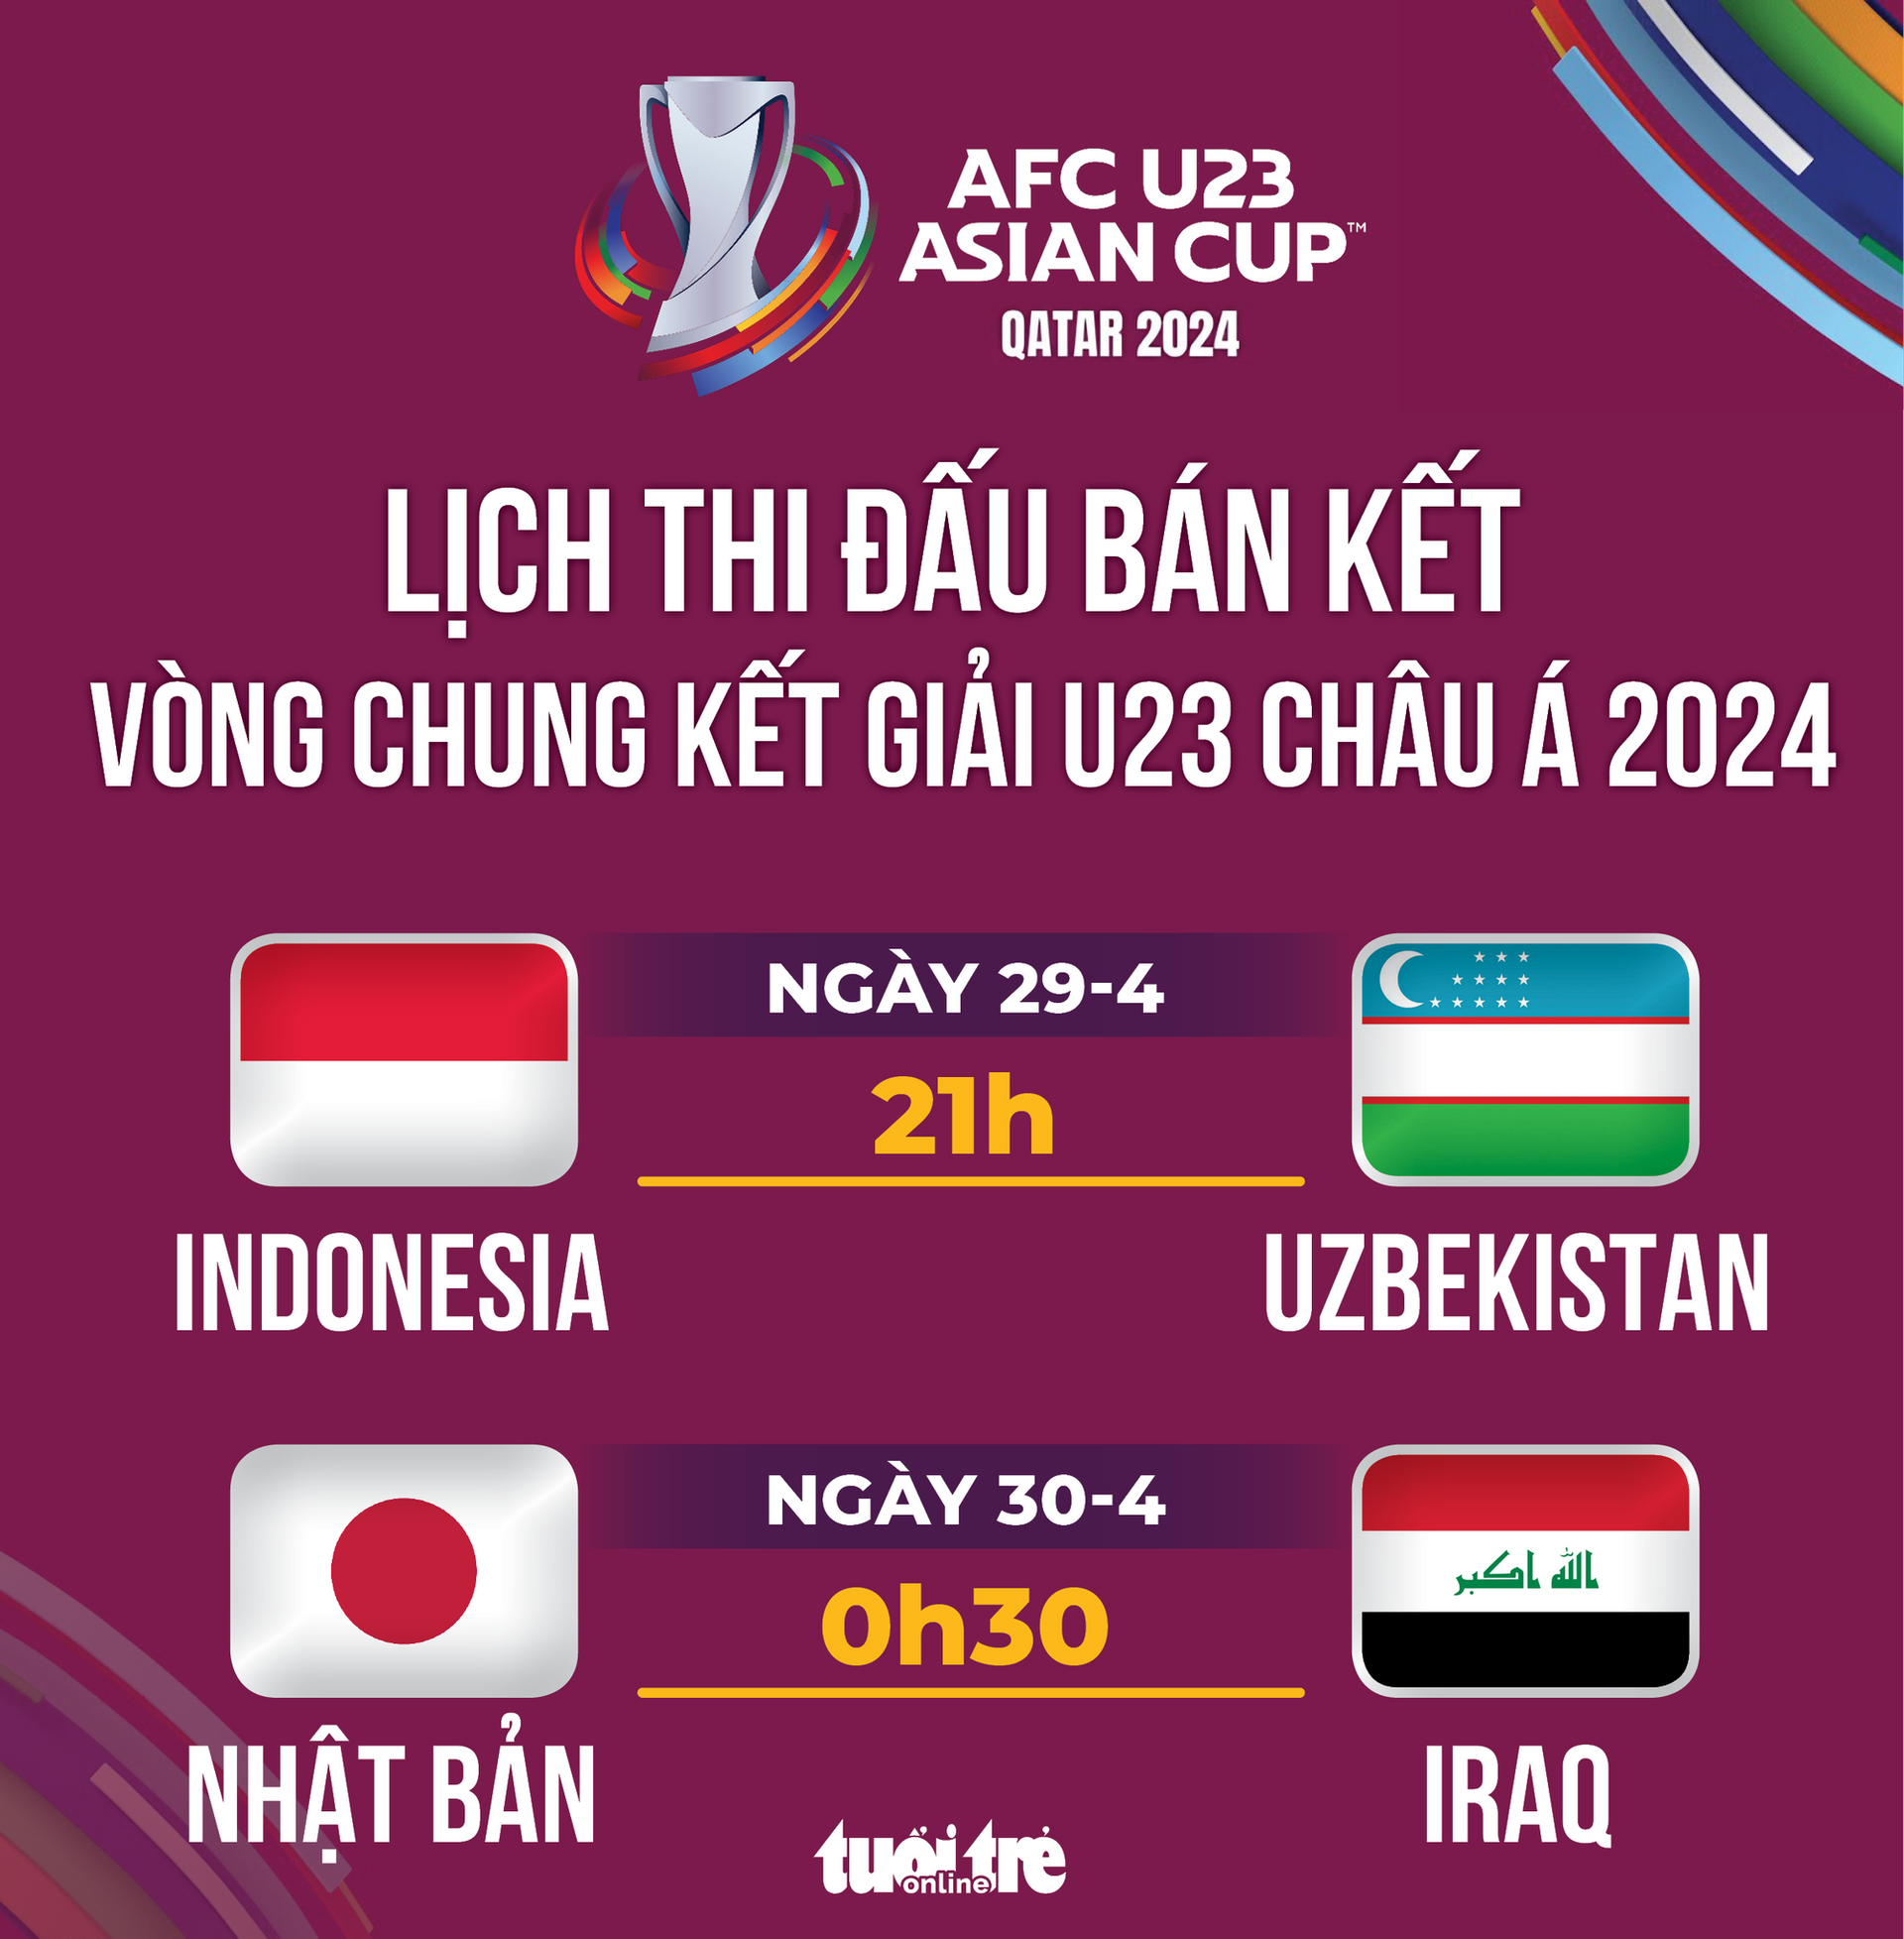 Lịch thi đấu bán kết Giải U23 châu Á 2024 - Đồ hoạ: AN BÌNH